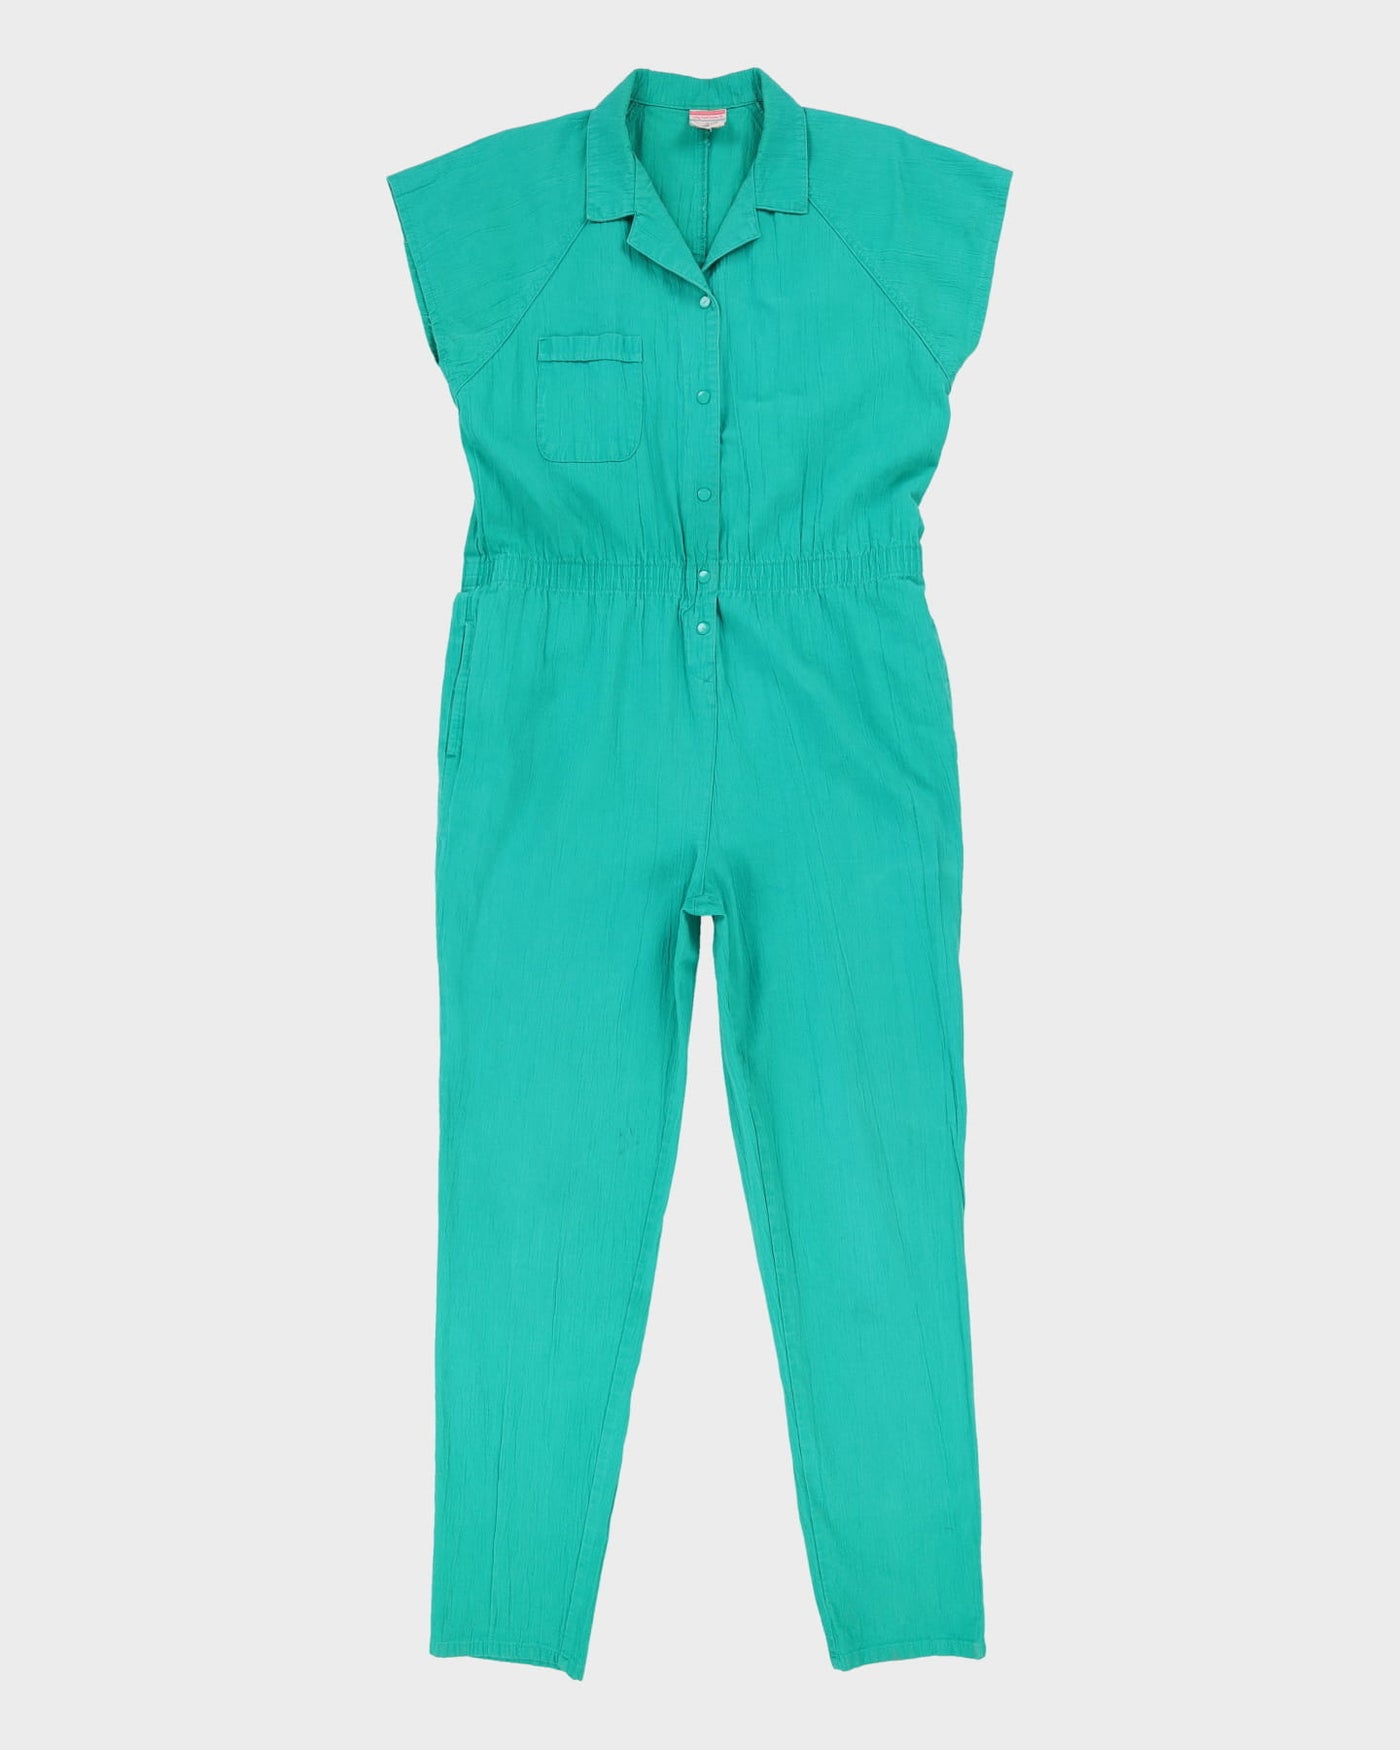 1990s Green Cotton Jumpsuit - M / L